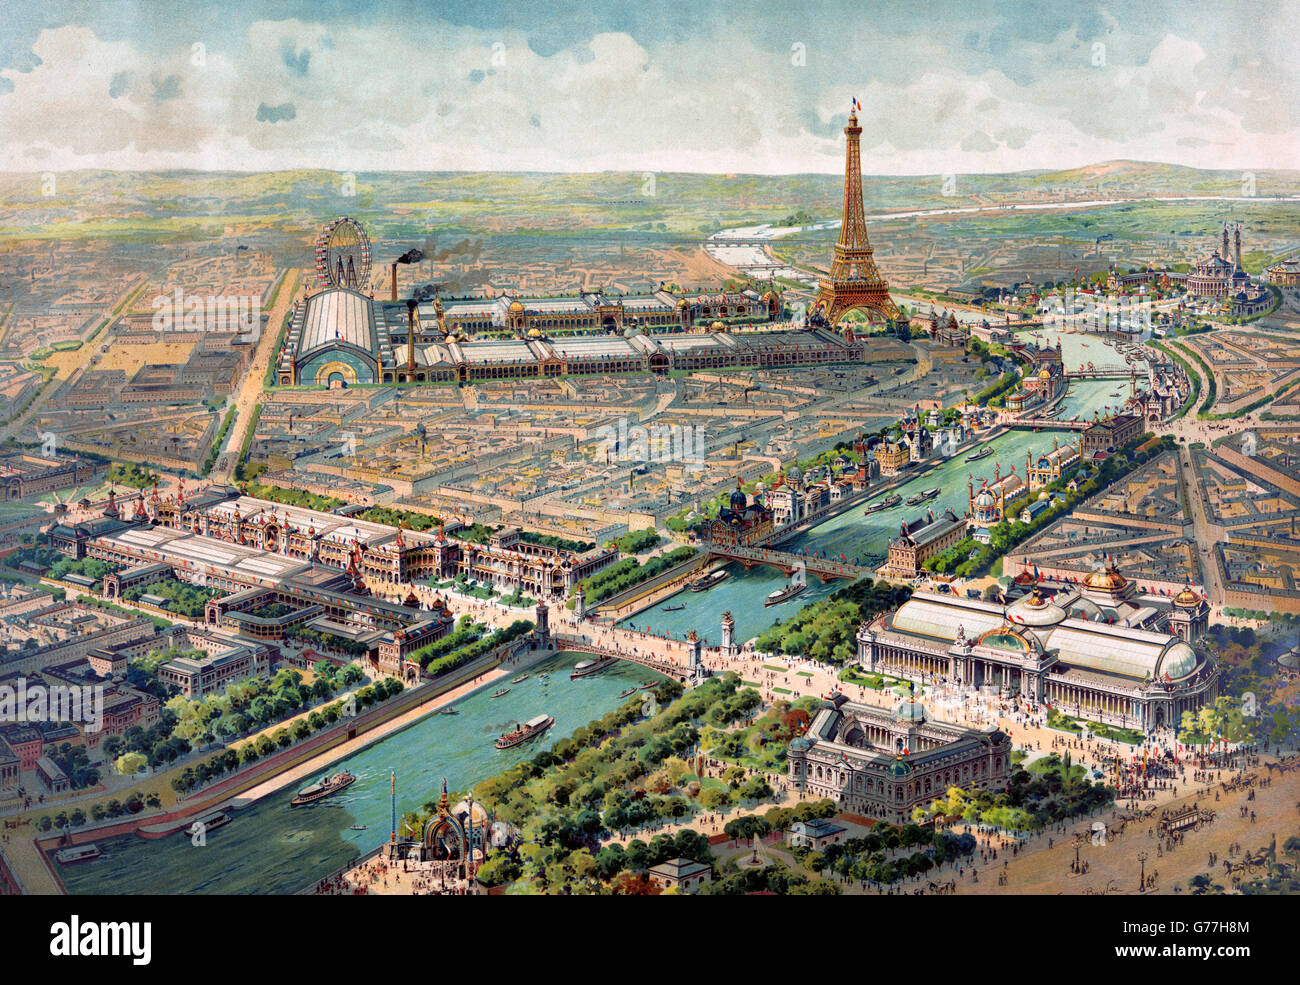 Ausstellung Paris, 1900. Panoramasicht auf die Exposition Universelle 1900 in Paris, Frankreich. Lithografie von Lucien Baylac, 1900. Stockfoto